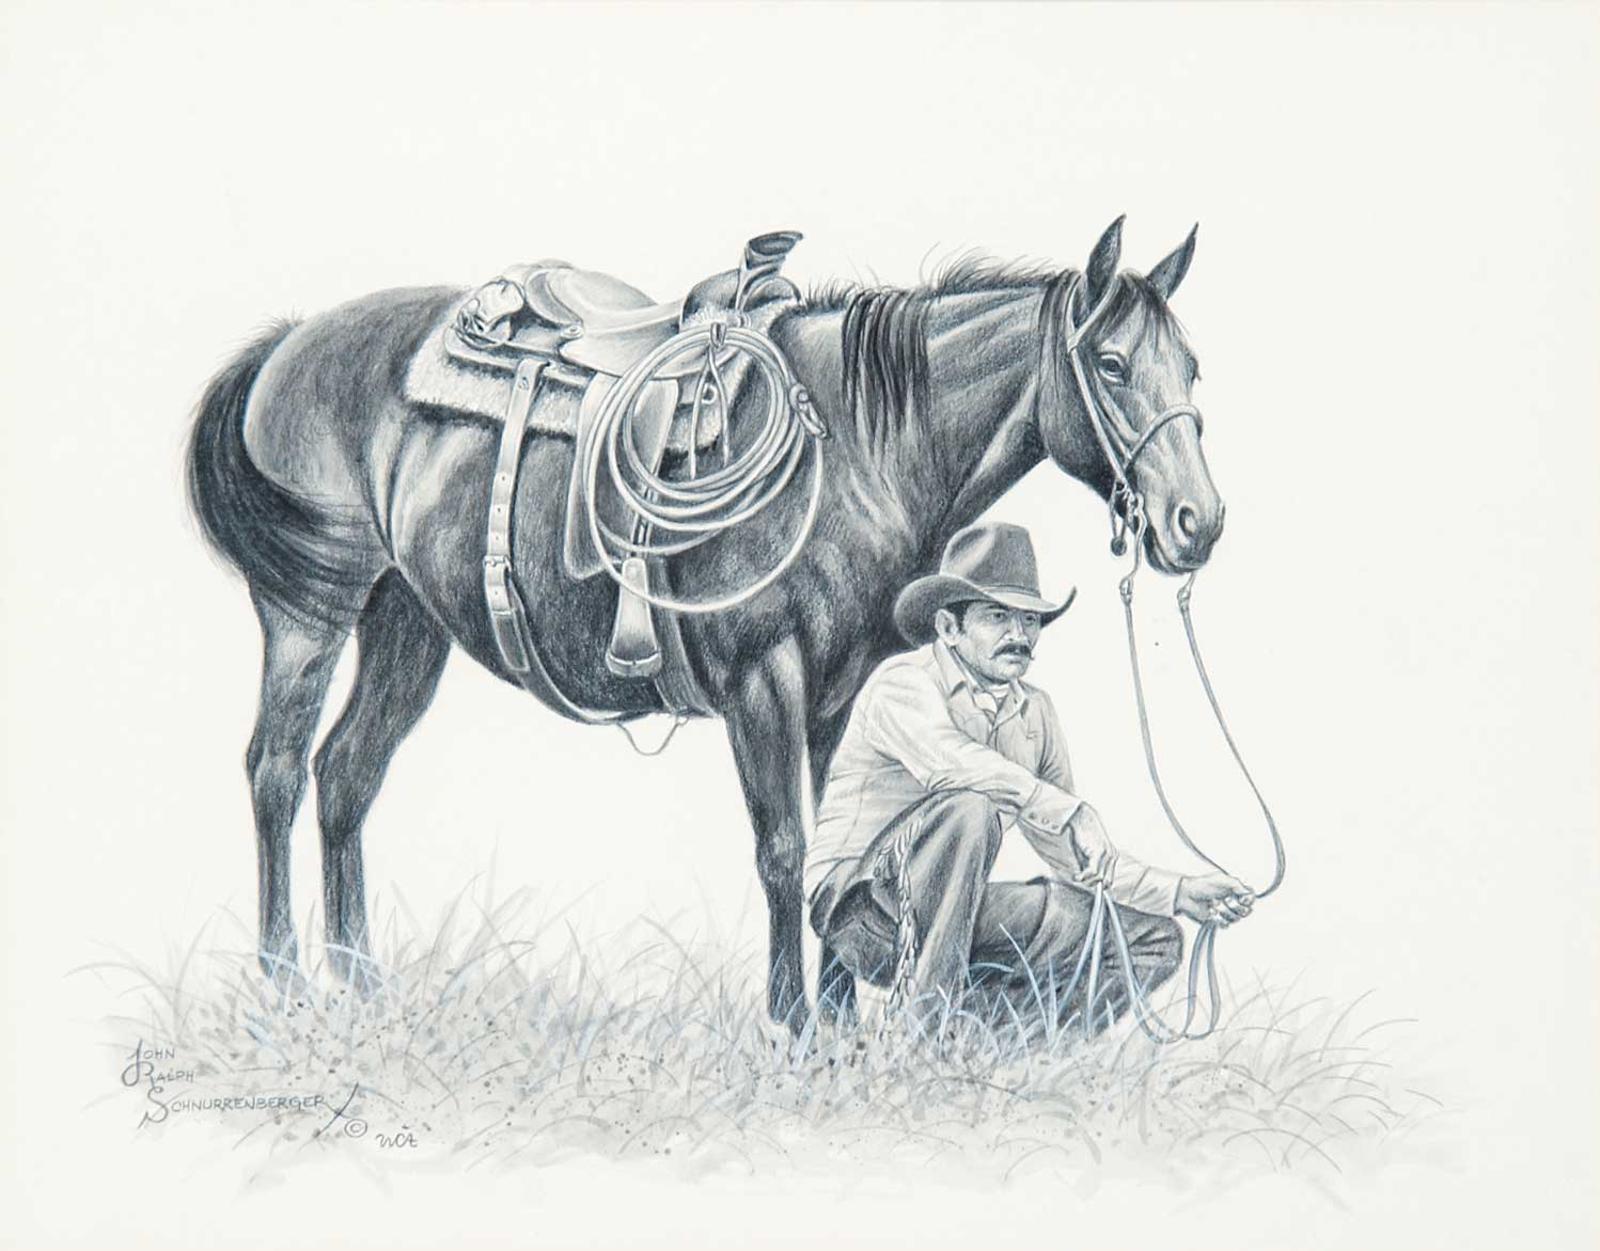 John Ralph Schnurrenberger (1941) - Horse n' Rider #4